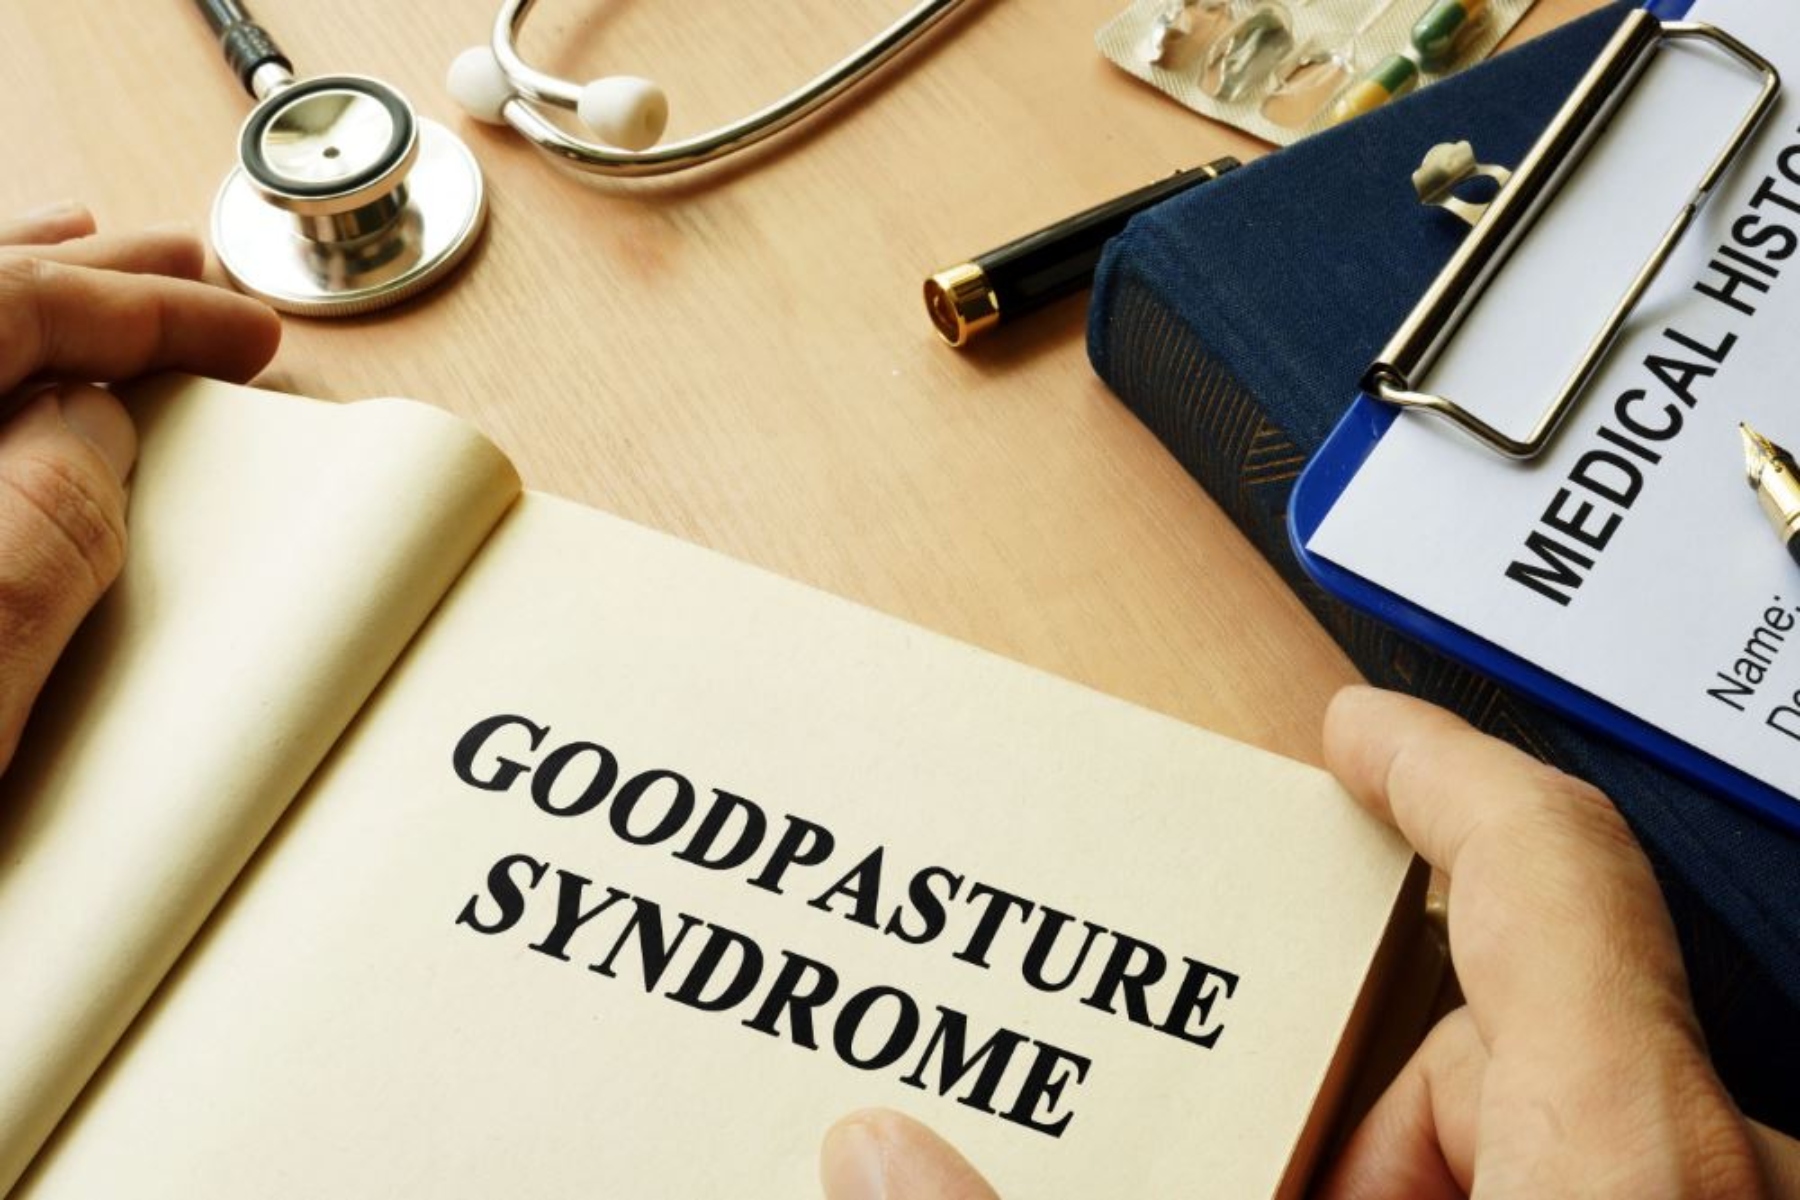 Σύνδρομο Goodpasture: Τι είναι η νόσος αντι-GBM;